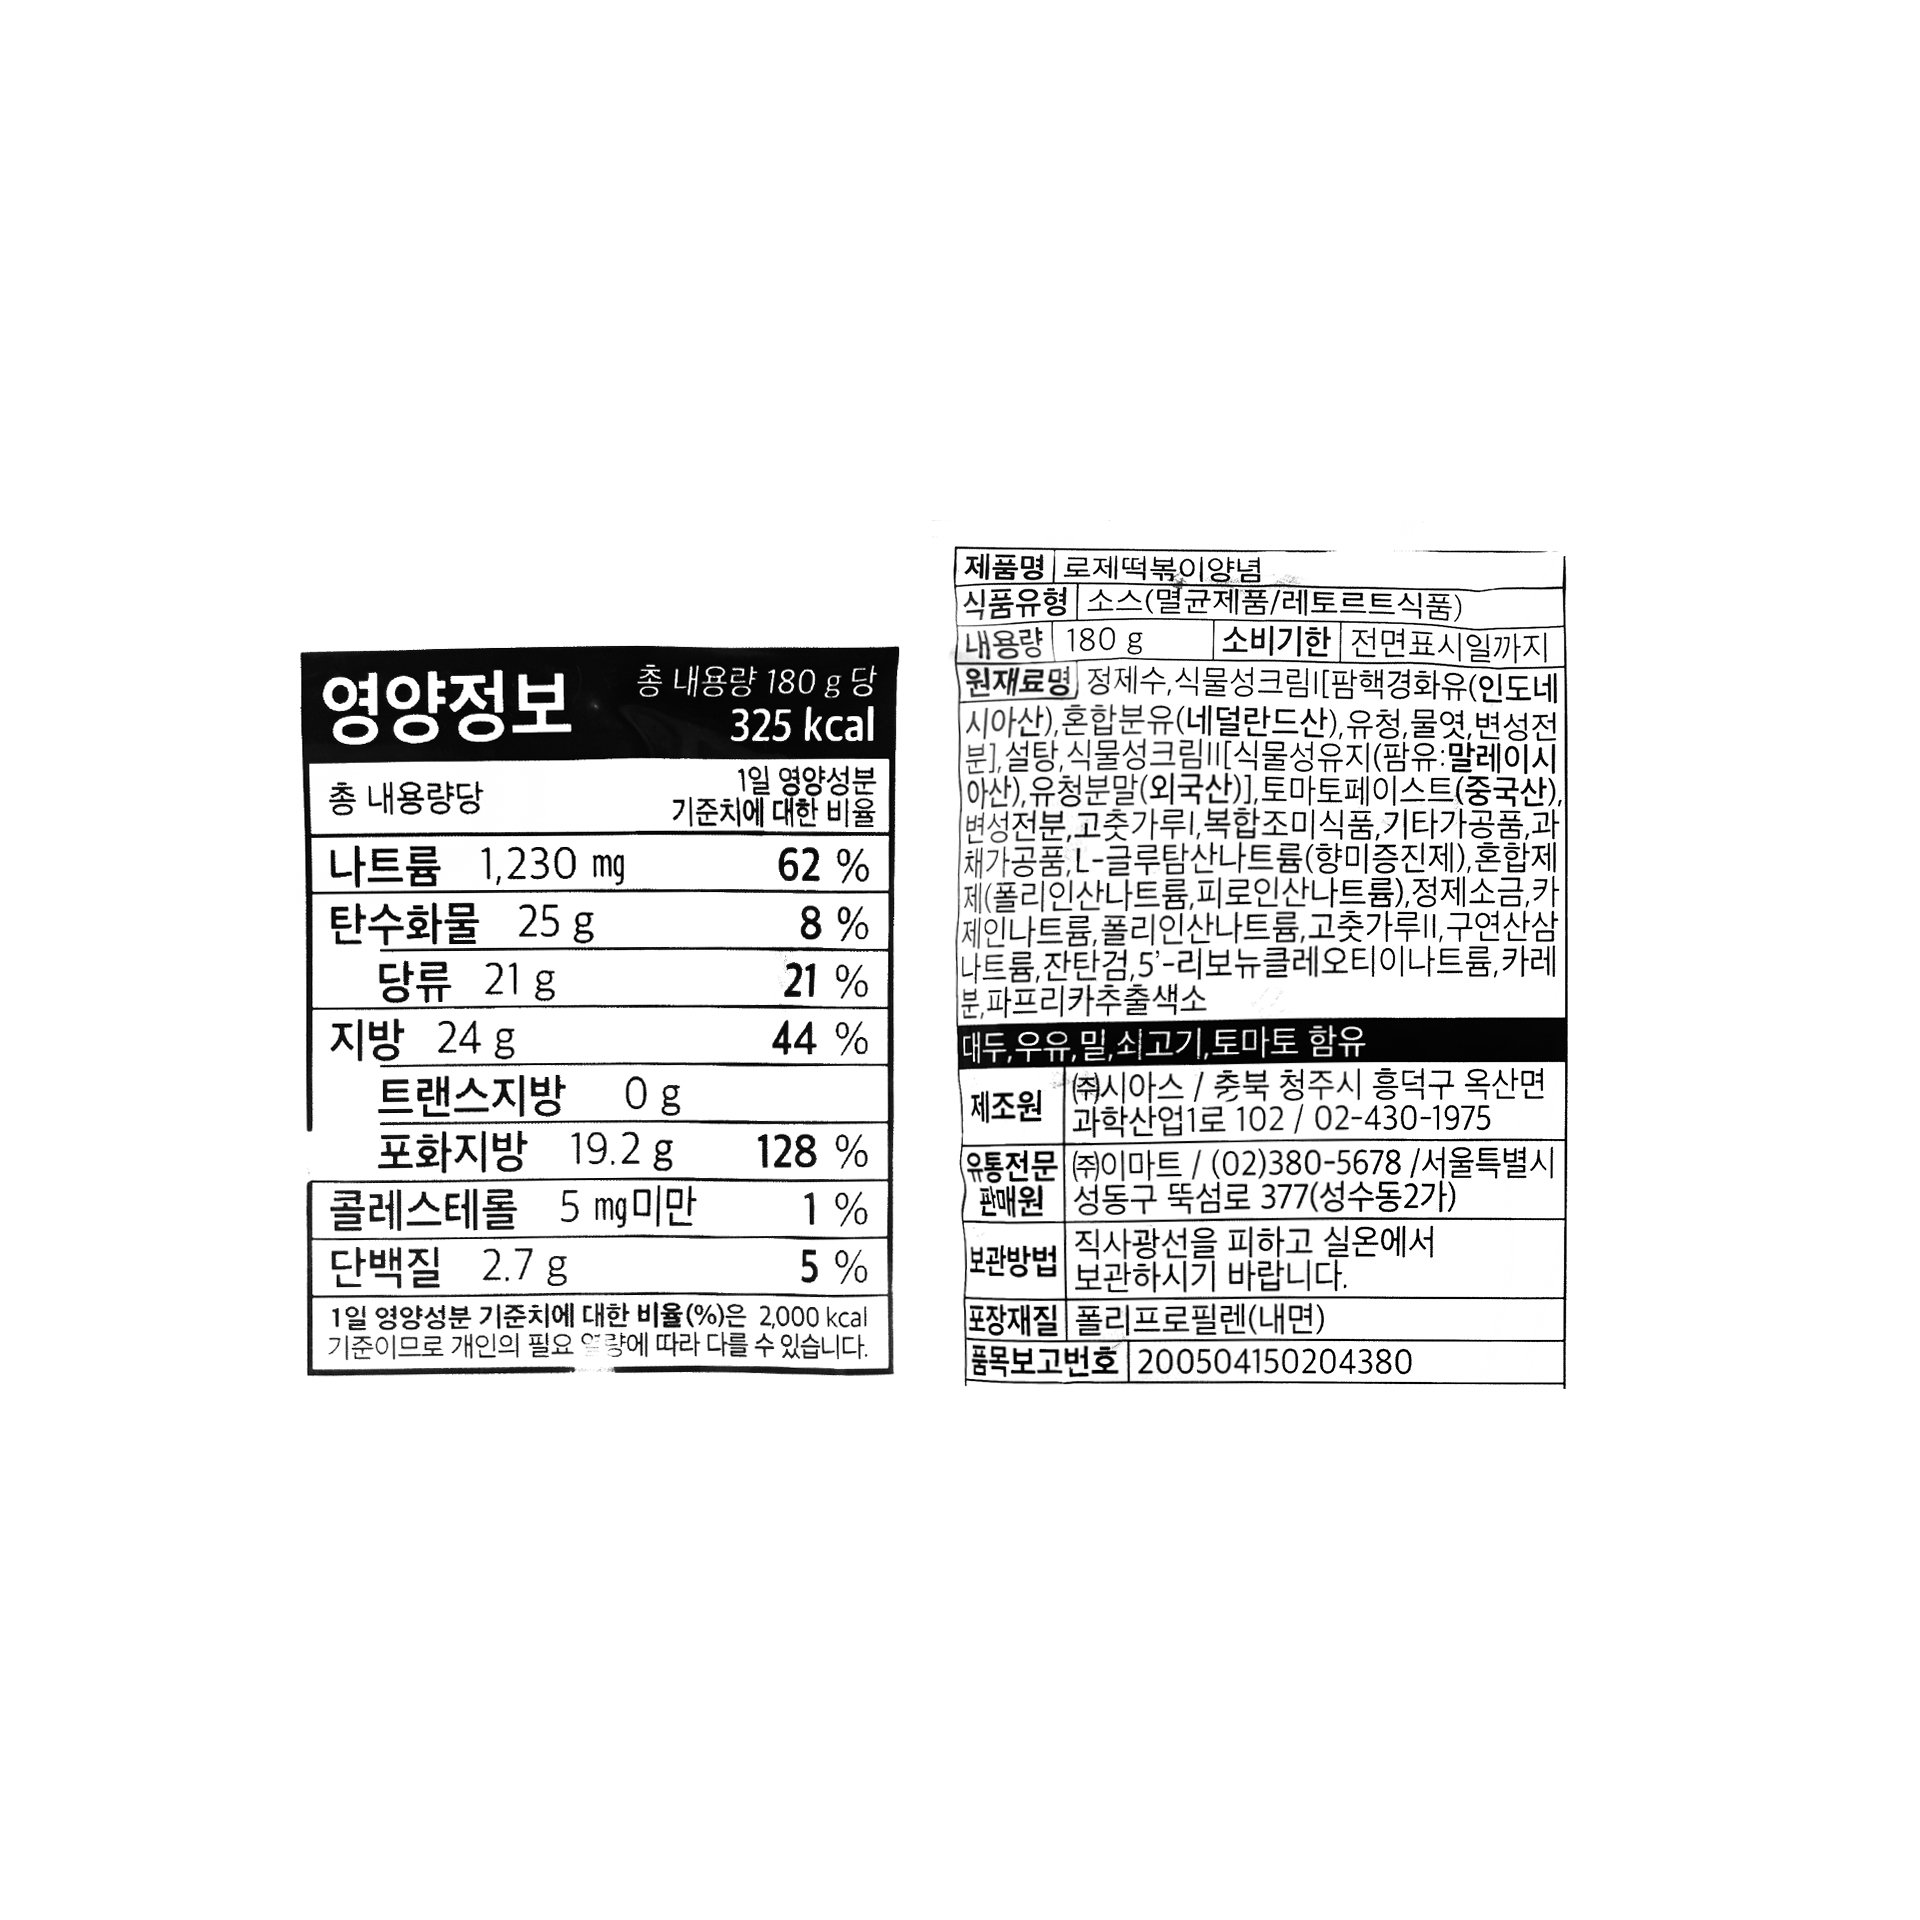 韓國食品-[No Brand] 玫瑰辣炒年糕醬汁 400g